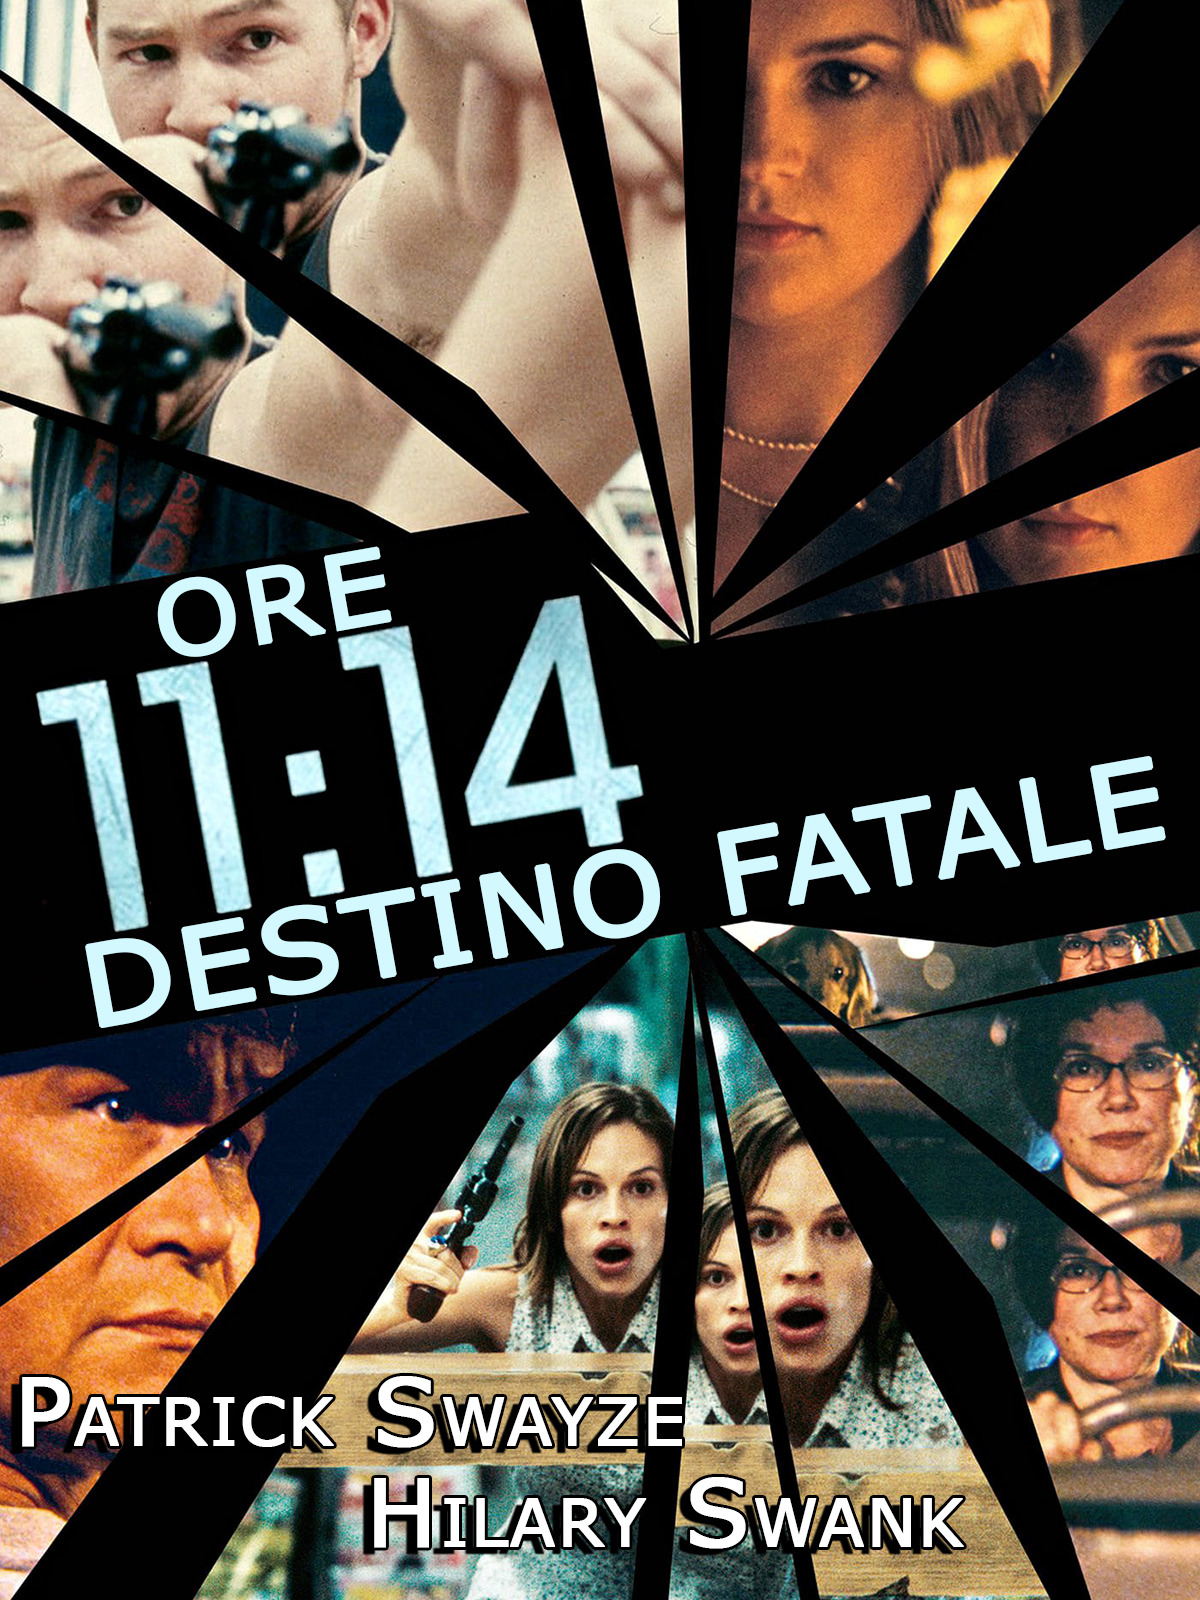 Ore 11:14 – Destino fatale [HD] (2003)